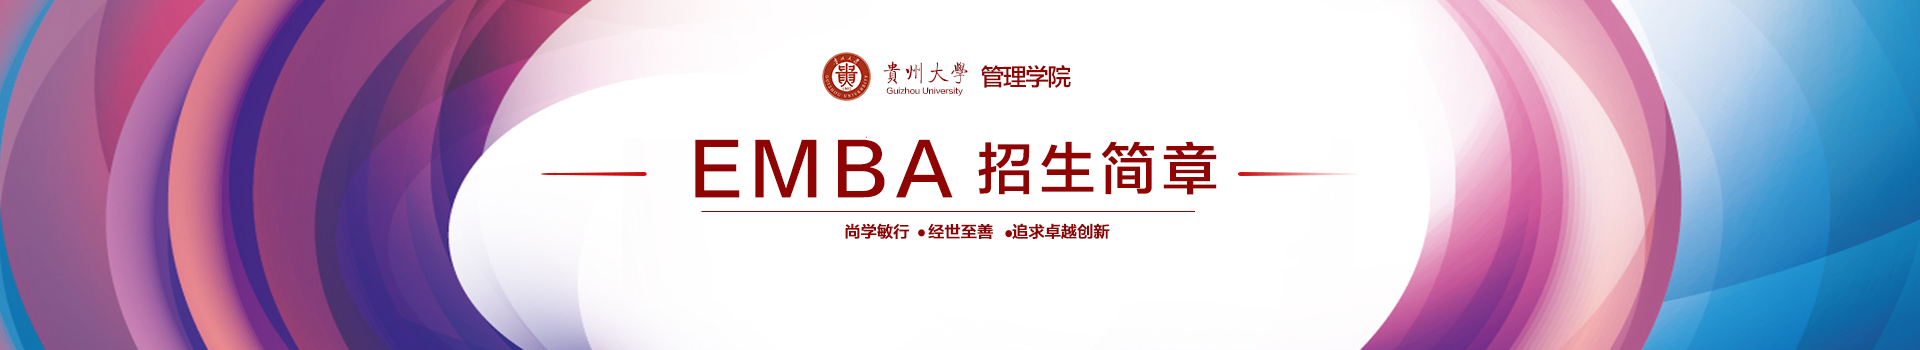 贵州大学管理学院高级工商管理硕士EMBA招生简章